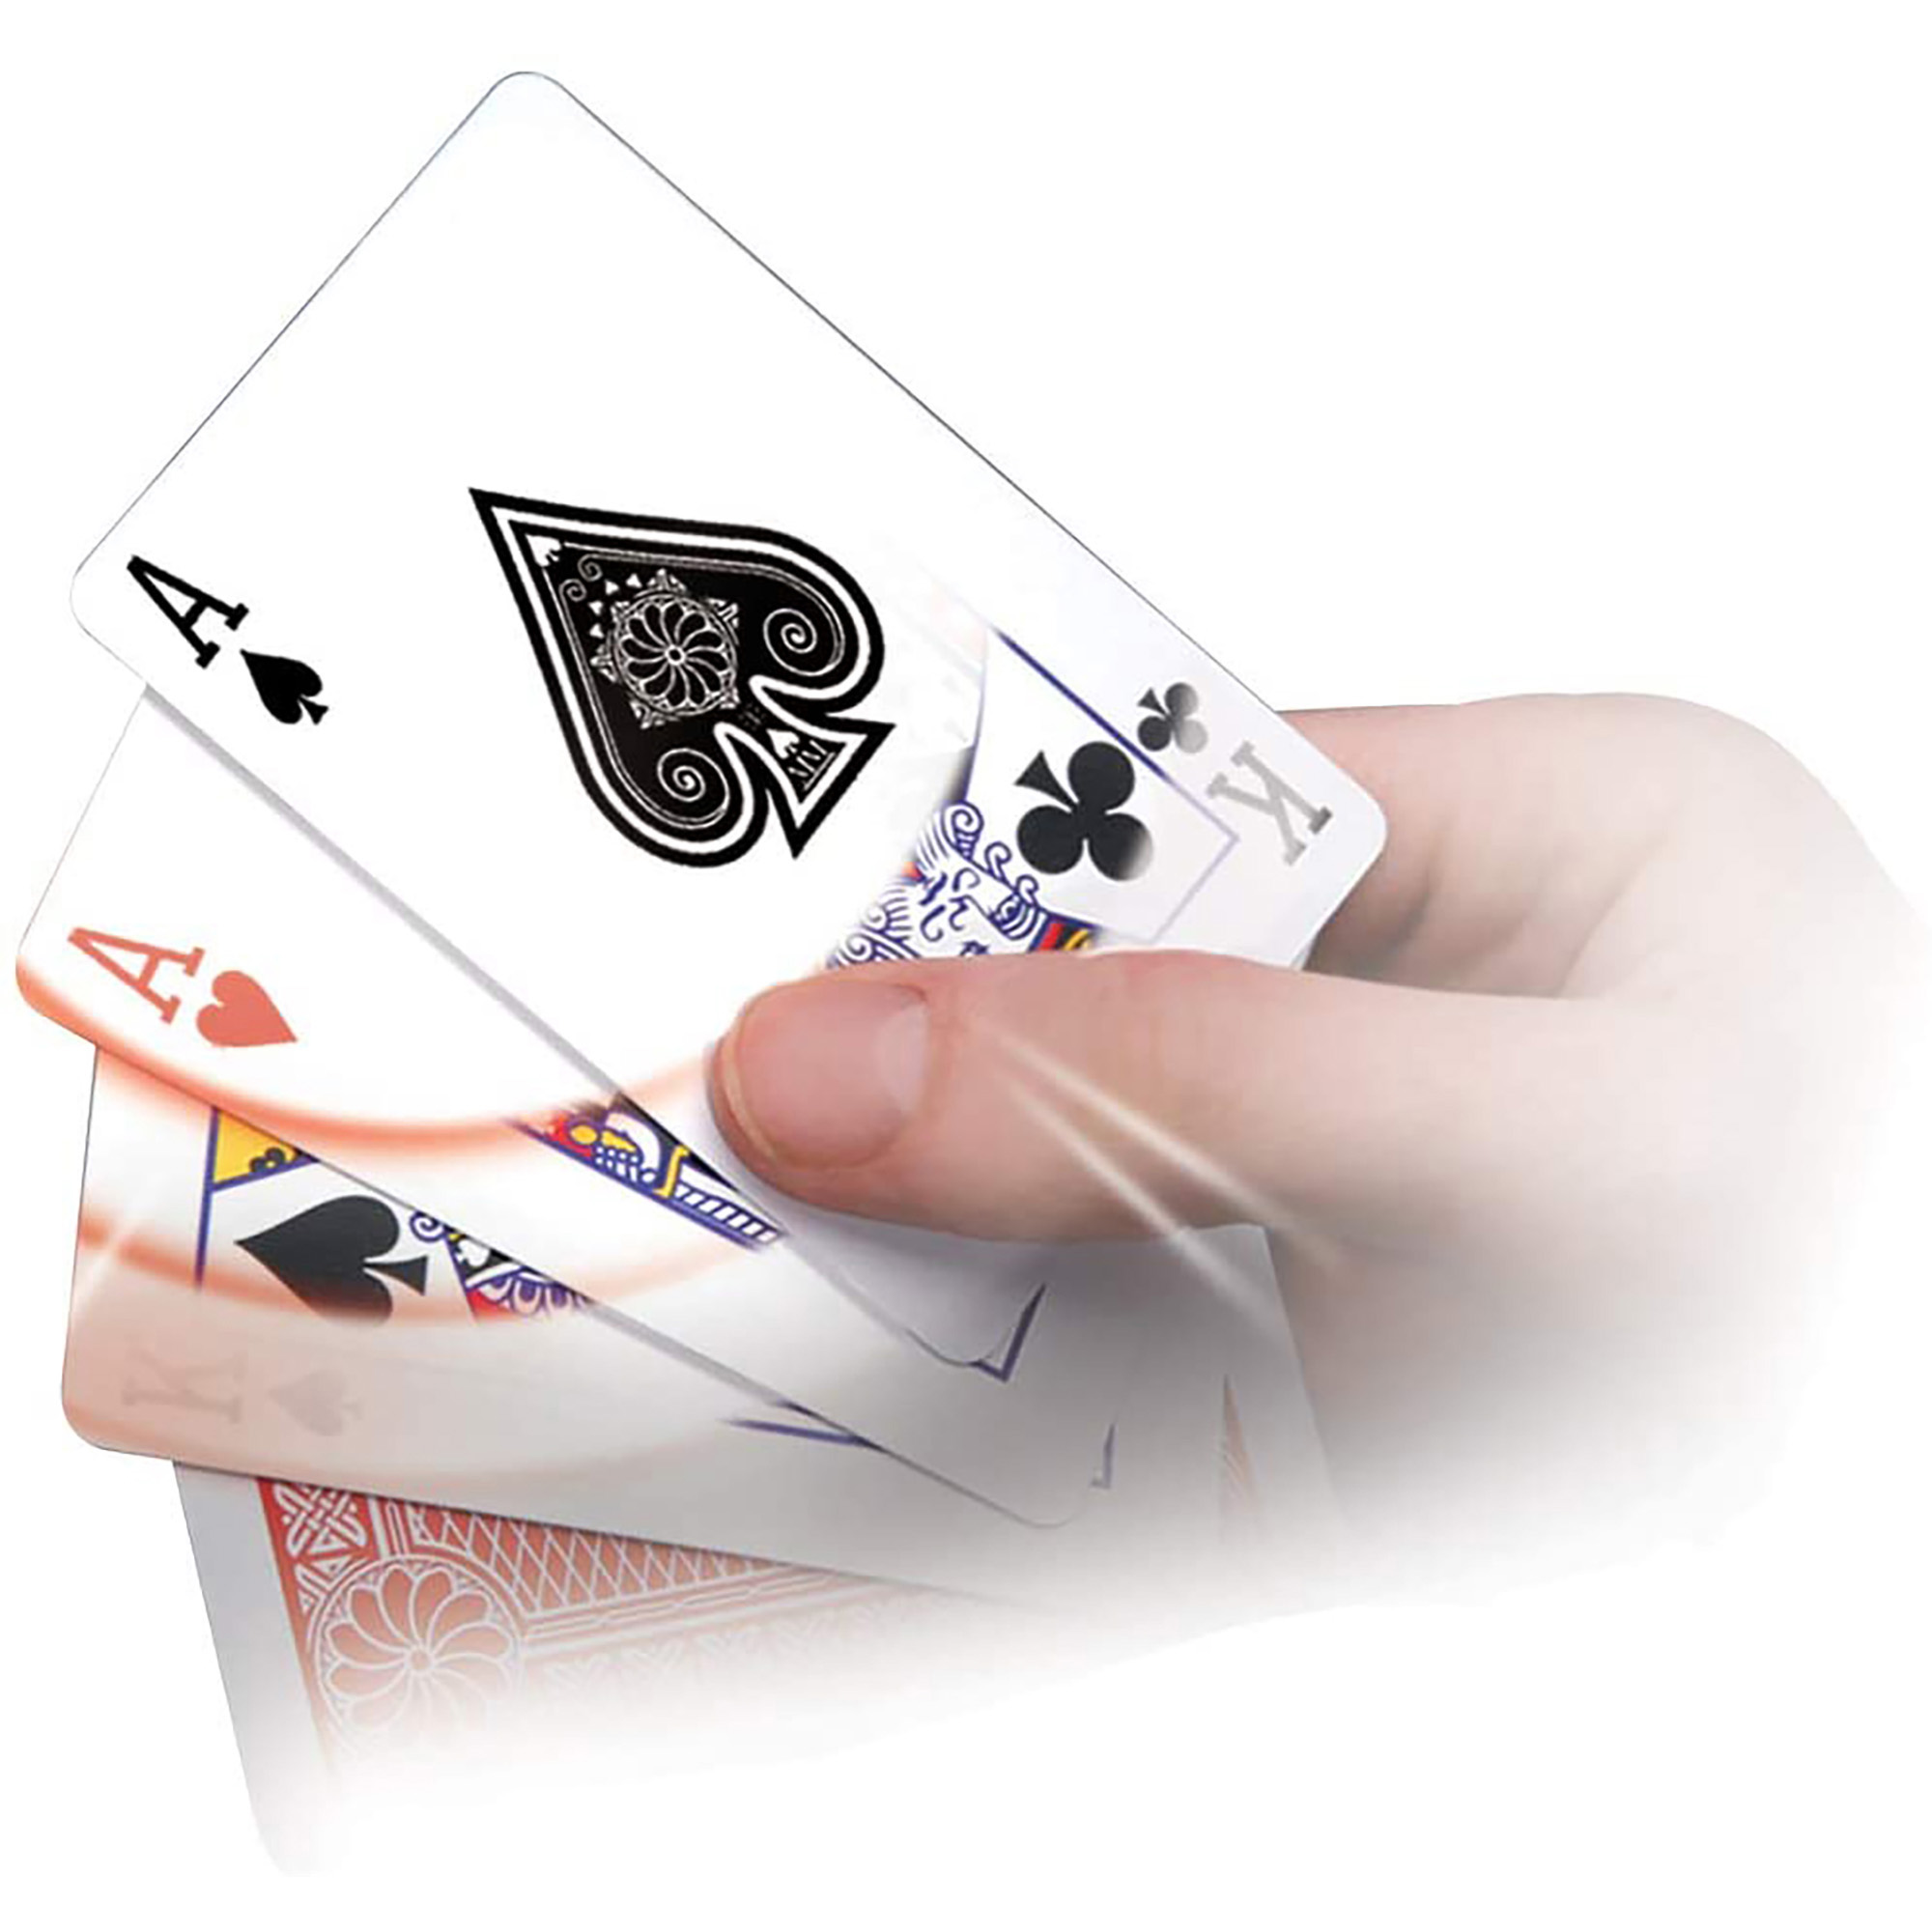 Magia sbalorditiva - 30 incredibili trucchi con le carte - Marvin's Magic